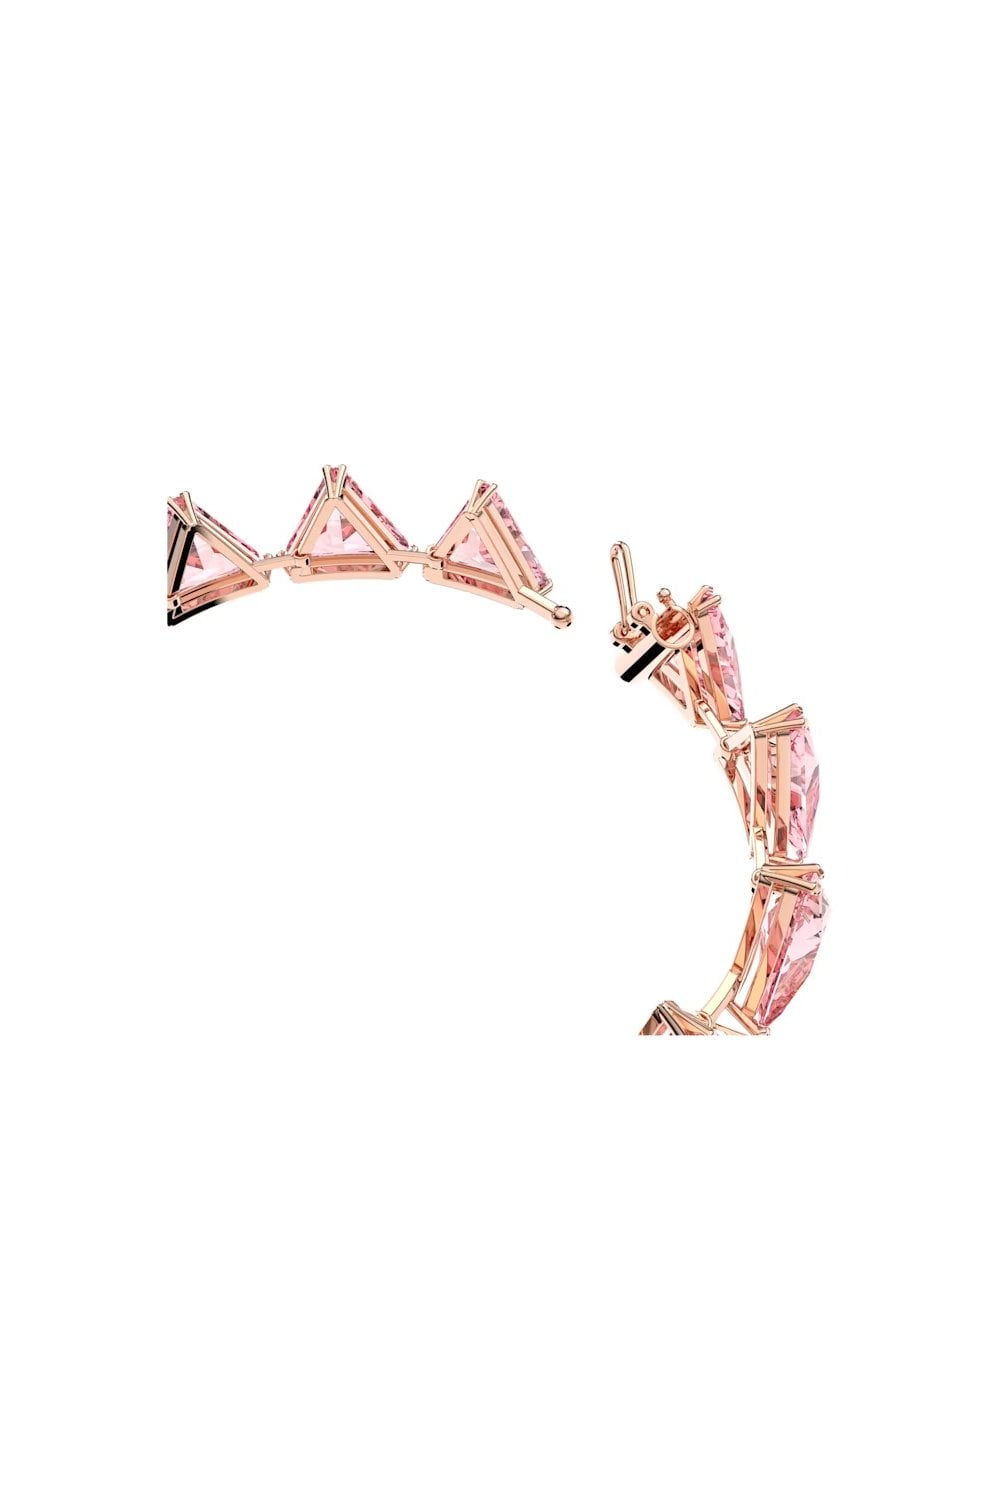 Swarovski Ortyx Pink Triangle Bracelet 5614934